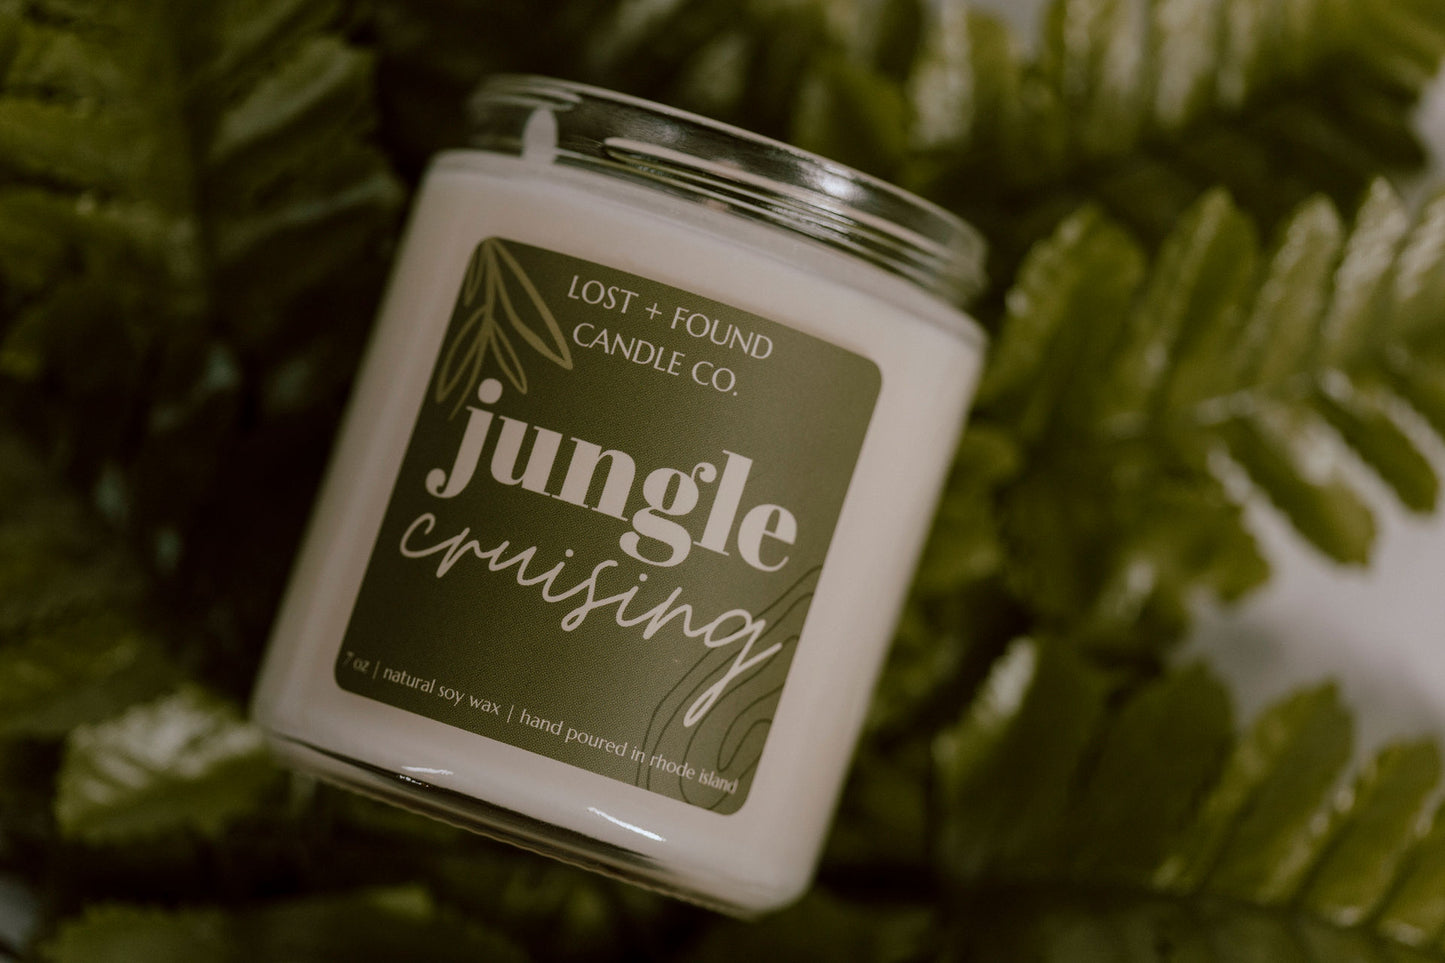 Jungle Cruising | Soy Candle | 7 oz